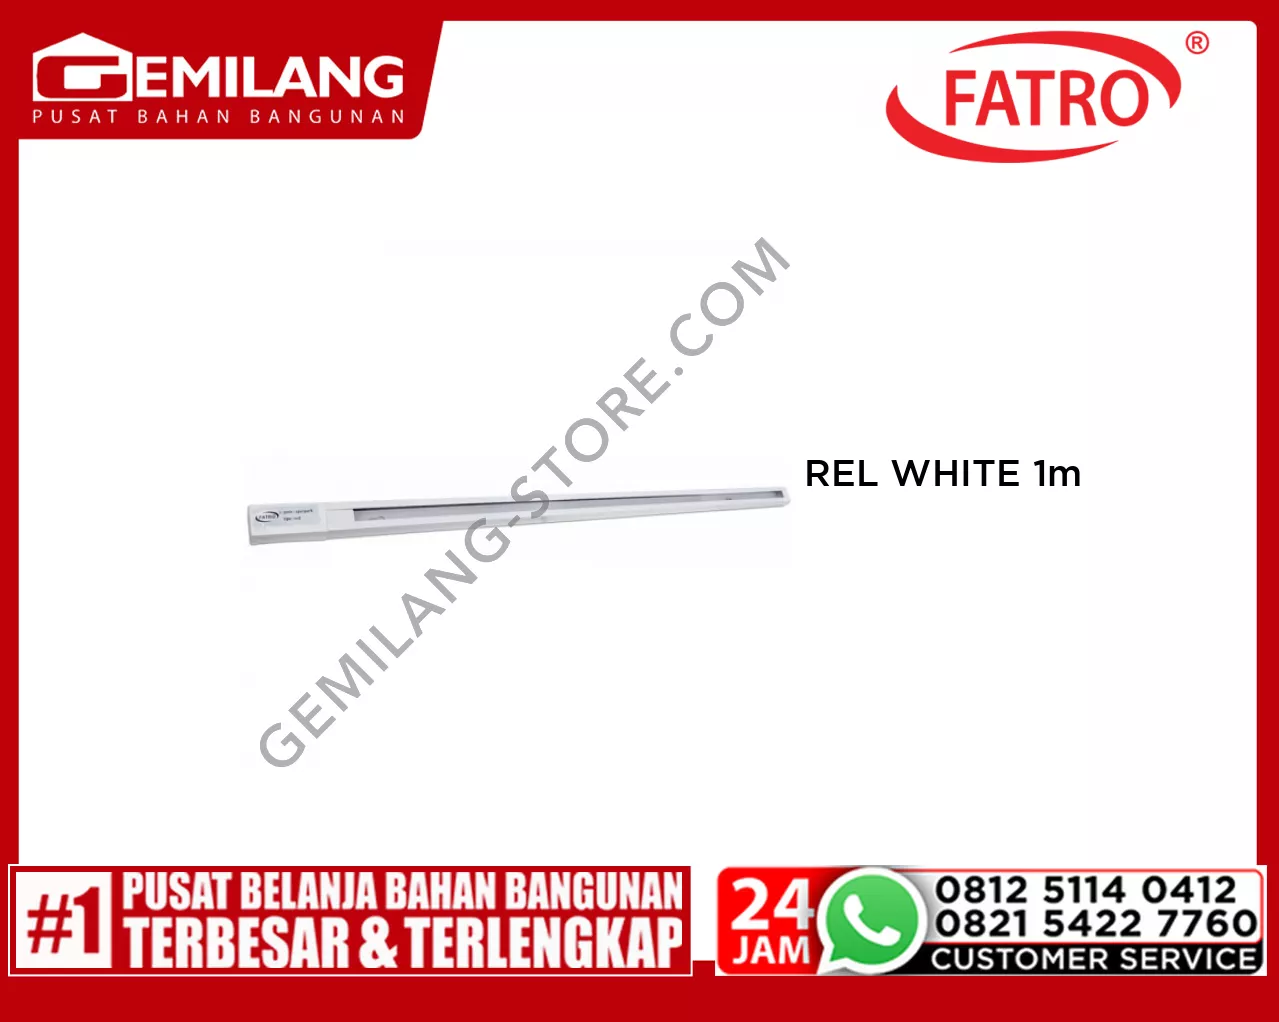 FATRO REL WHITE 1m